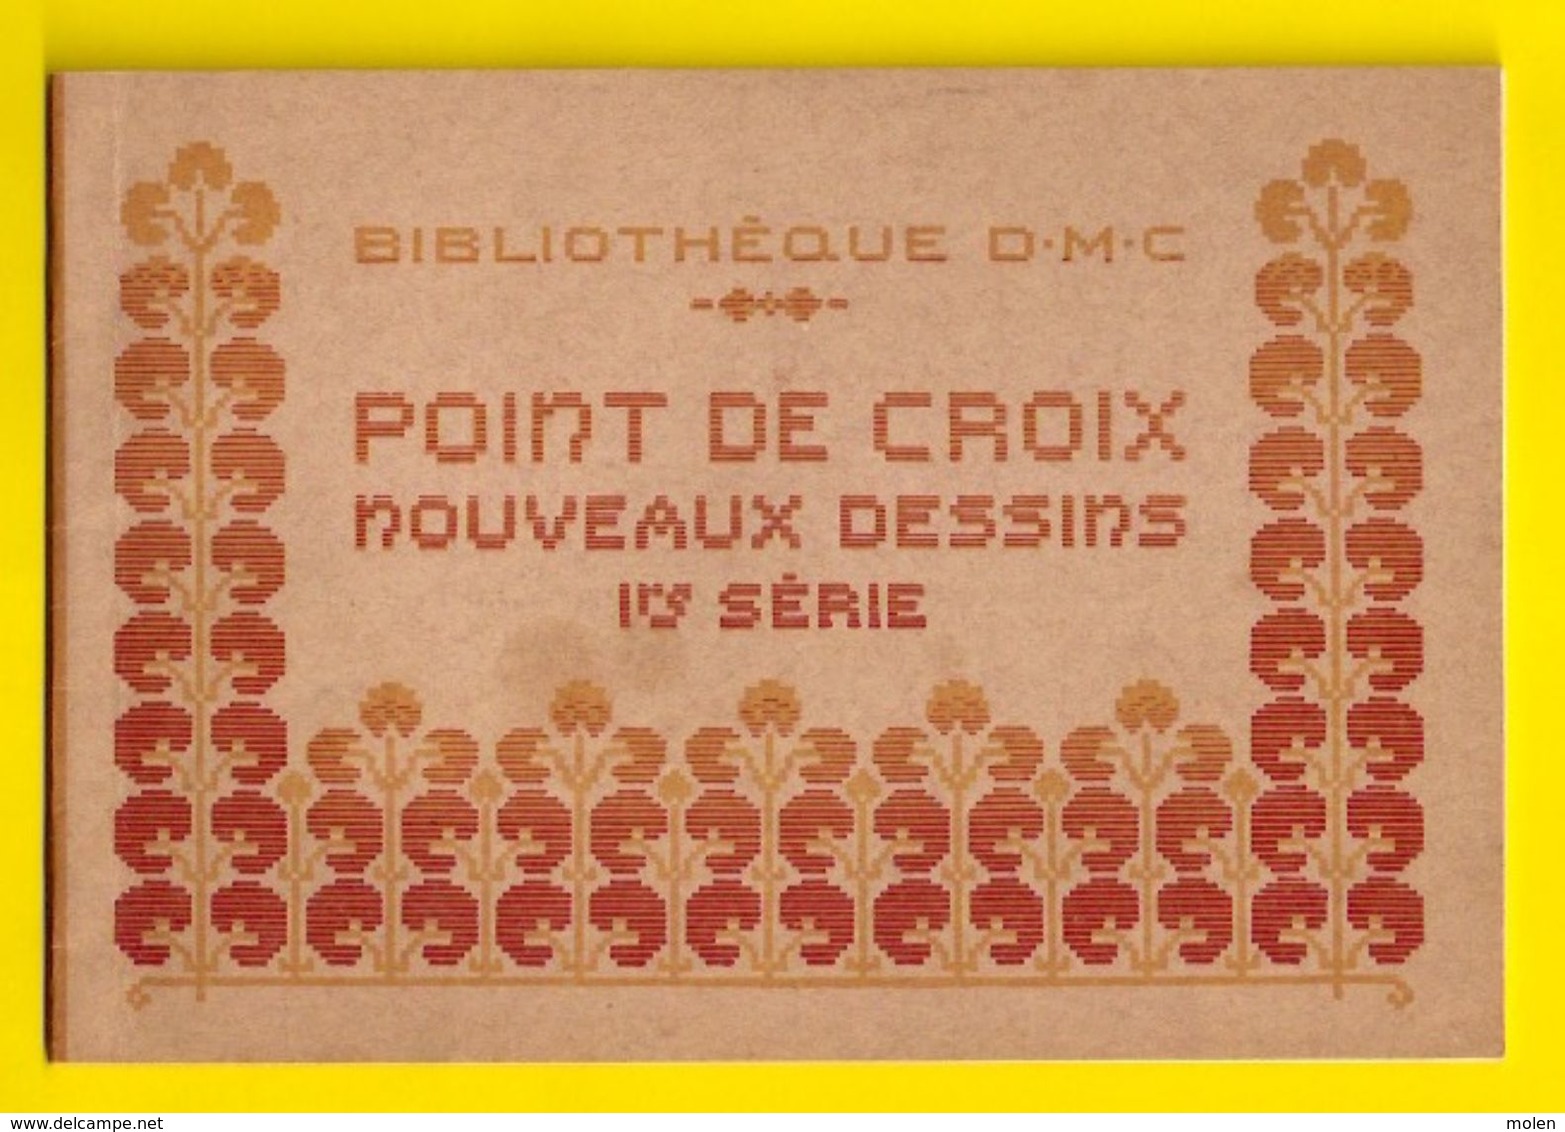 POINT DE CROIX 1re Serie Ca1900 BIBLIOTHEQUE D.M.C. BRODERIE CROSS STITCH Borduurwerk BRODEUSE DENTELLE KRUISSTEEK Z351 - Cross Stitch